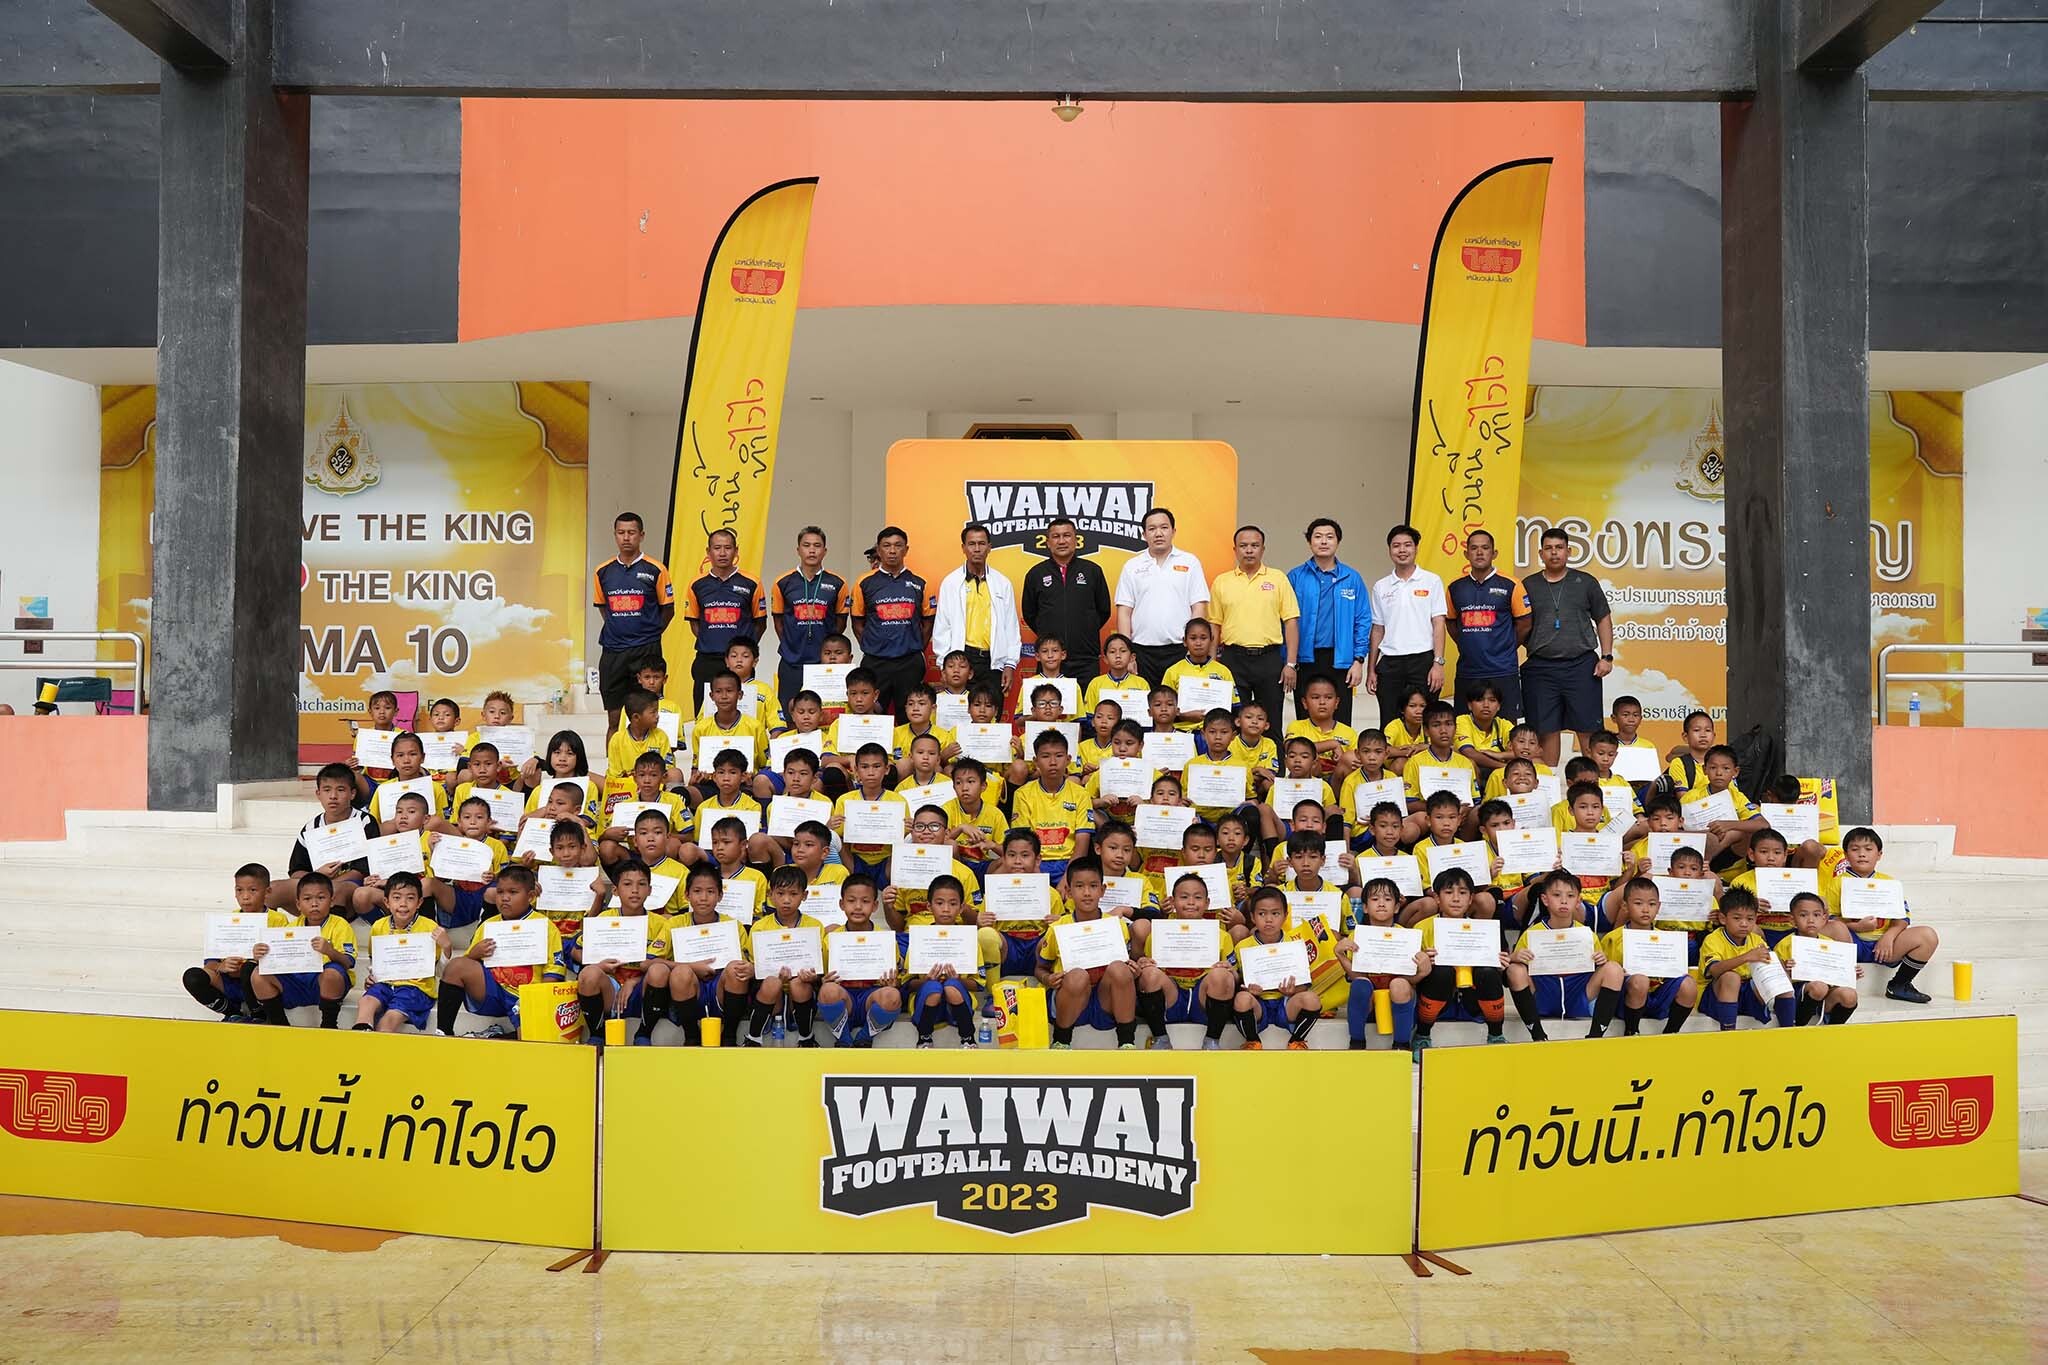 ออกสตาร์ทแบบ NON STOP "WAIWAI FOOTBALL ACADEMY 2023" ติวเข้มหลักสูตรฟุตบอลกับโค้ชระดับทีมชาติ ปั้นเด็กอีสานสู่นักเตะอาชีพ